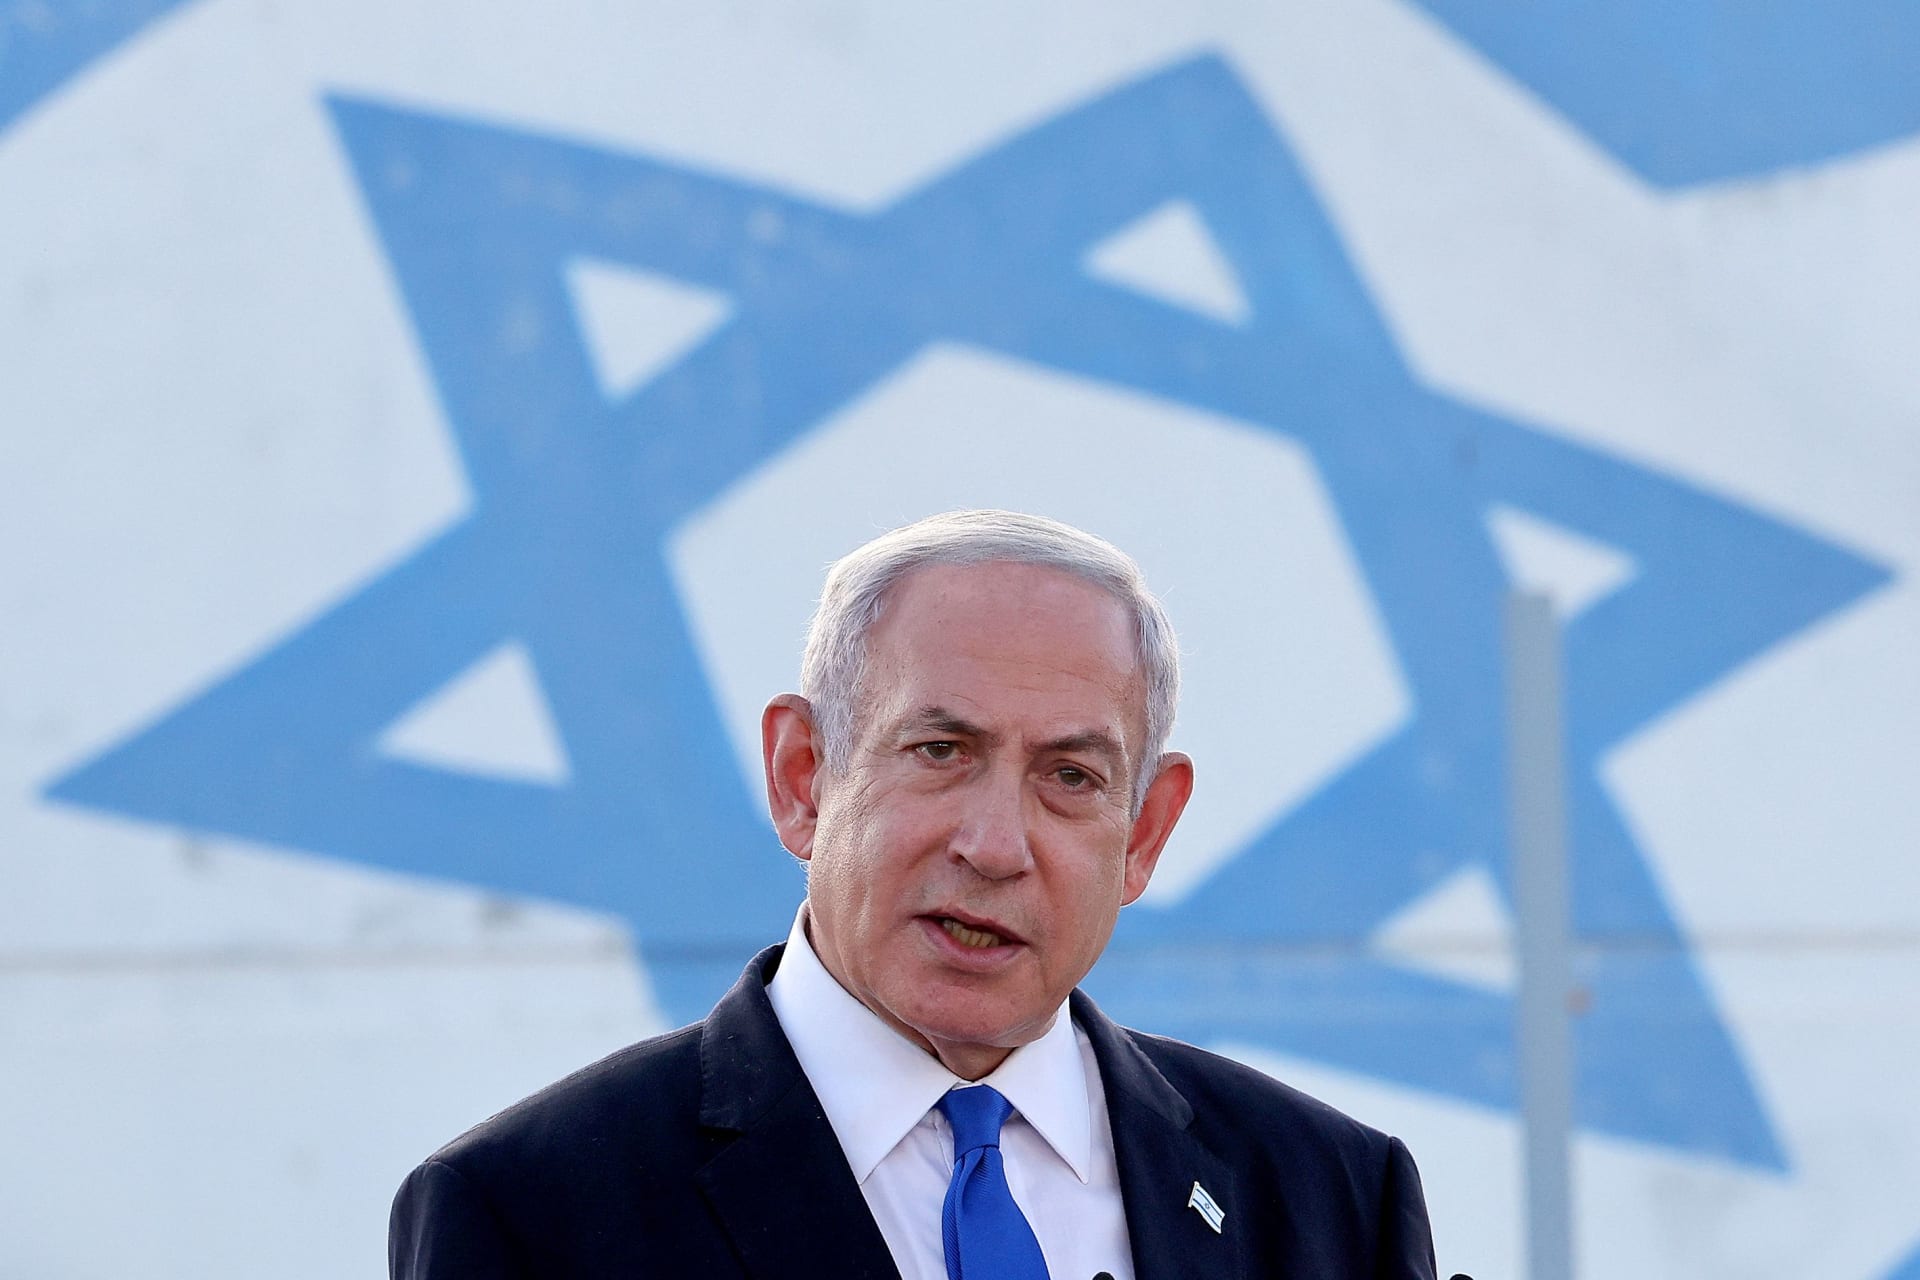 نتنياهو: أرفض "شروط الاستسلام" التي حددتها "حماس" لإطلاق سراح الرهائن